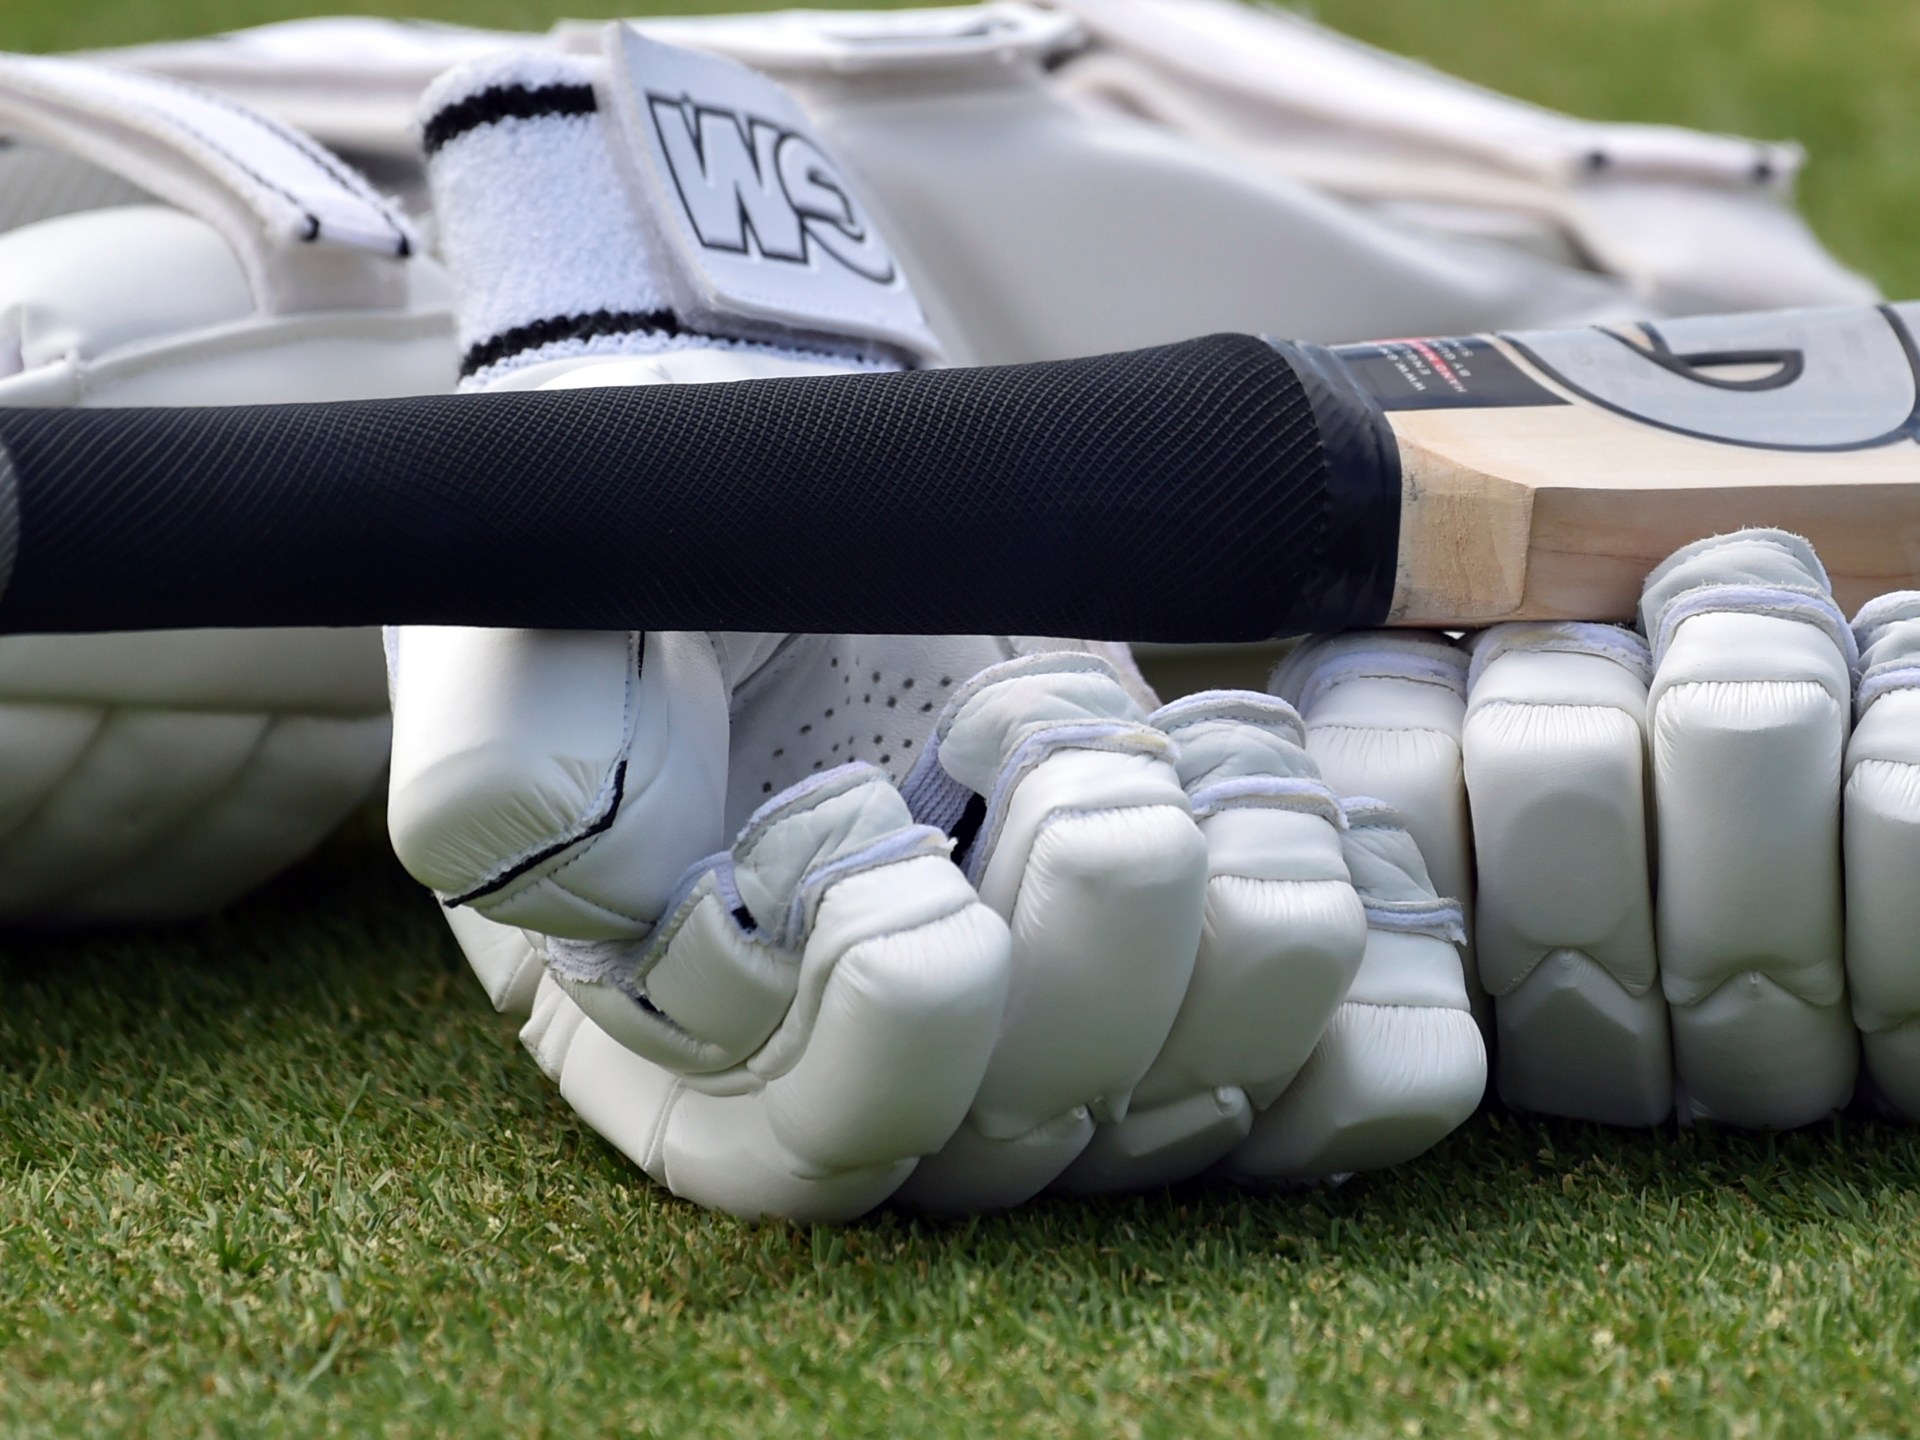 Laporan menemukan rasisme, seksisme, dan elitisme marak di kriket Inggris |  Berita Kriket